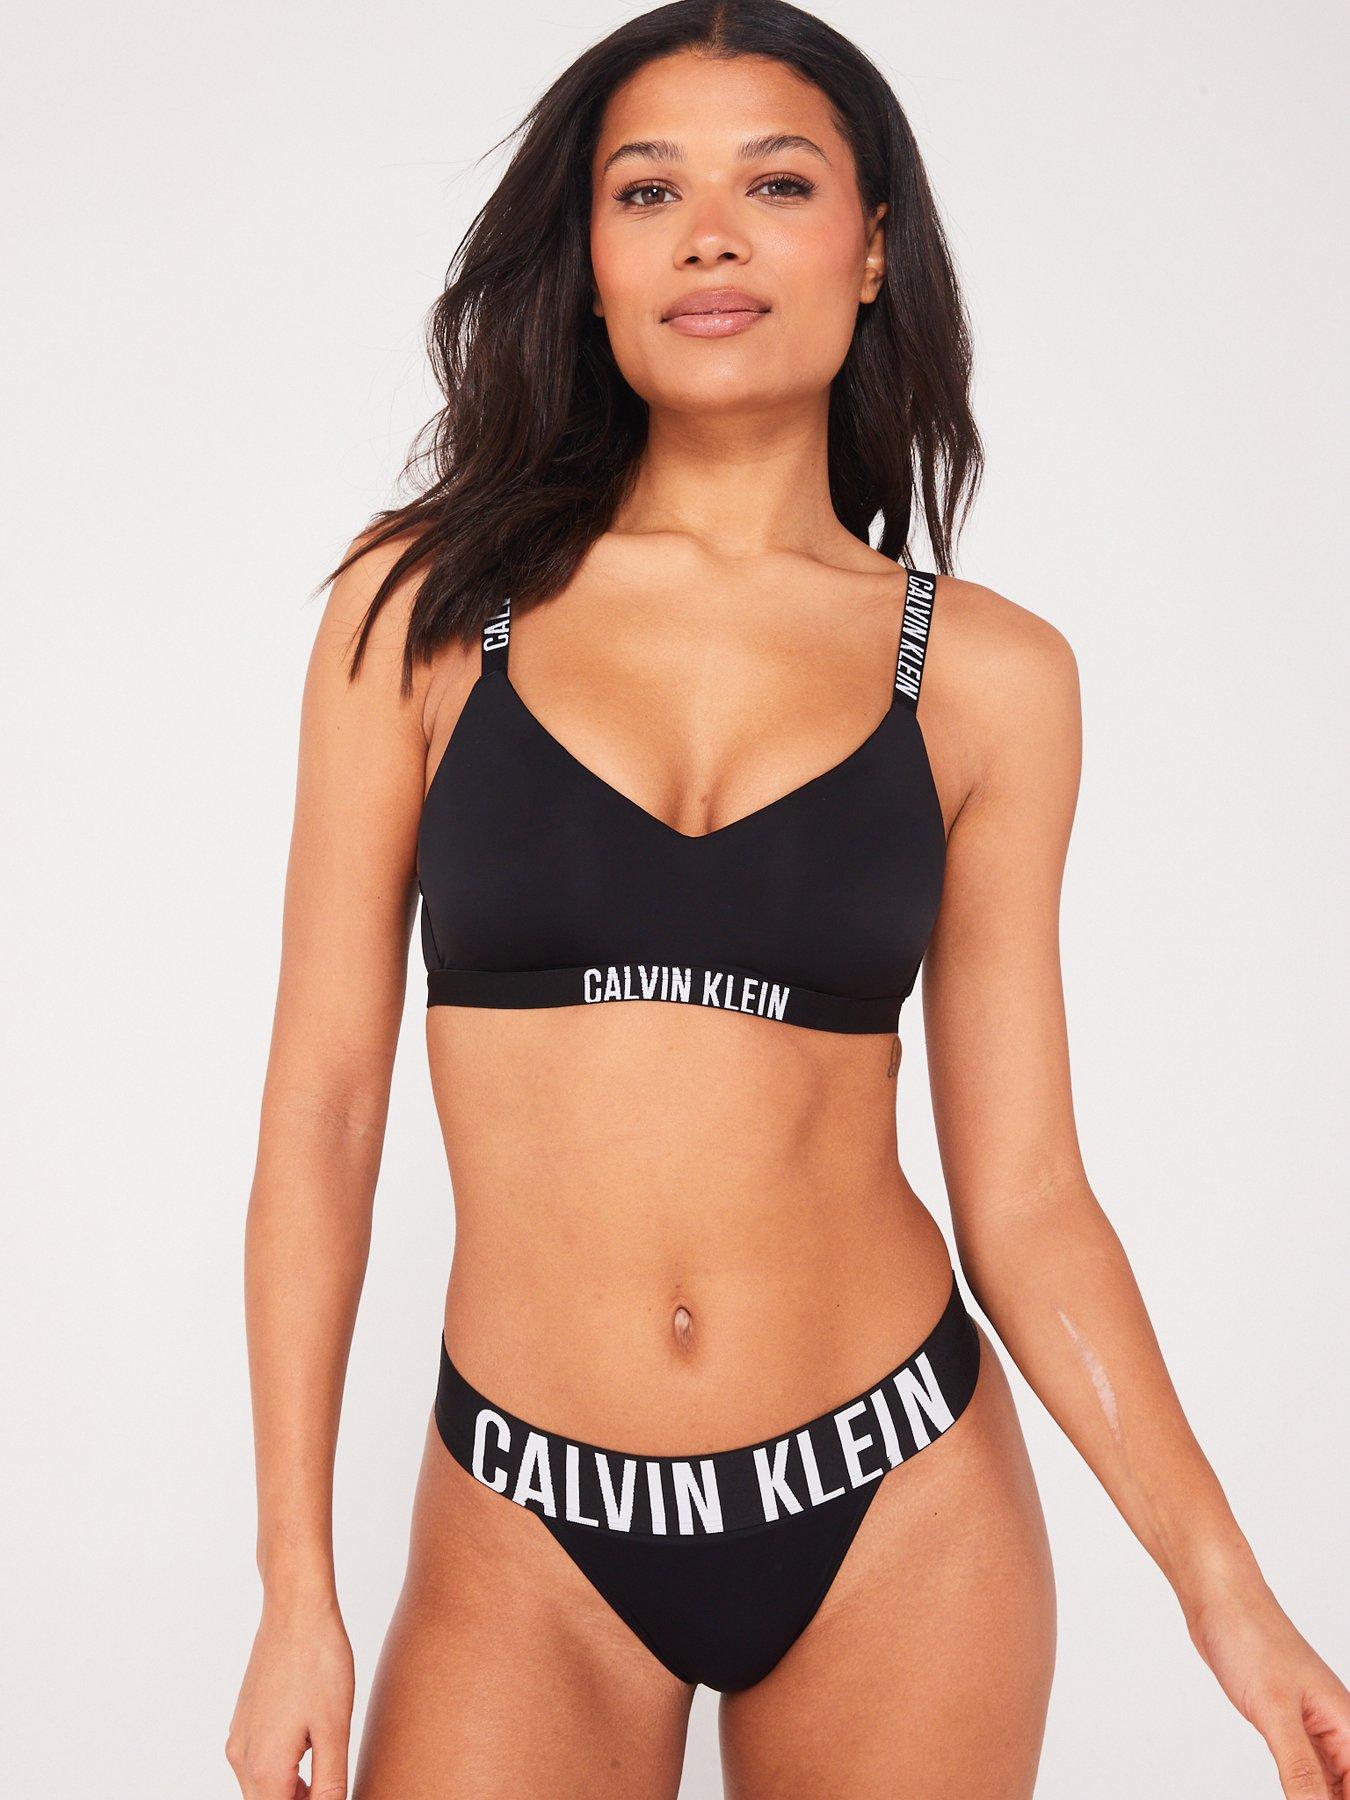 Calvin Klein Invisibles Thong - Black